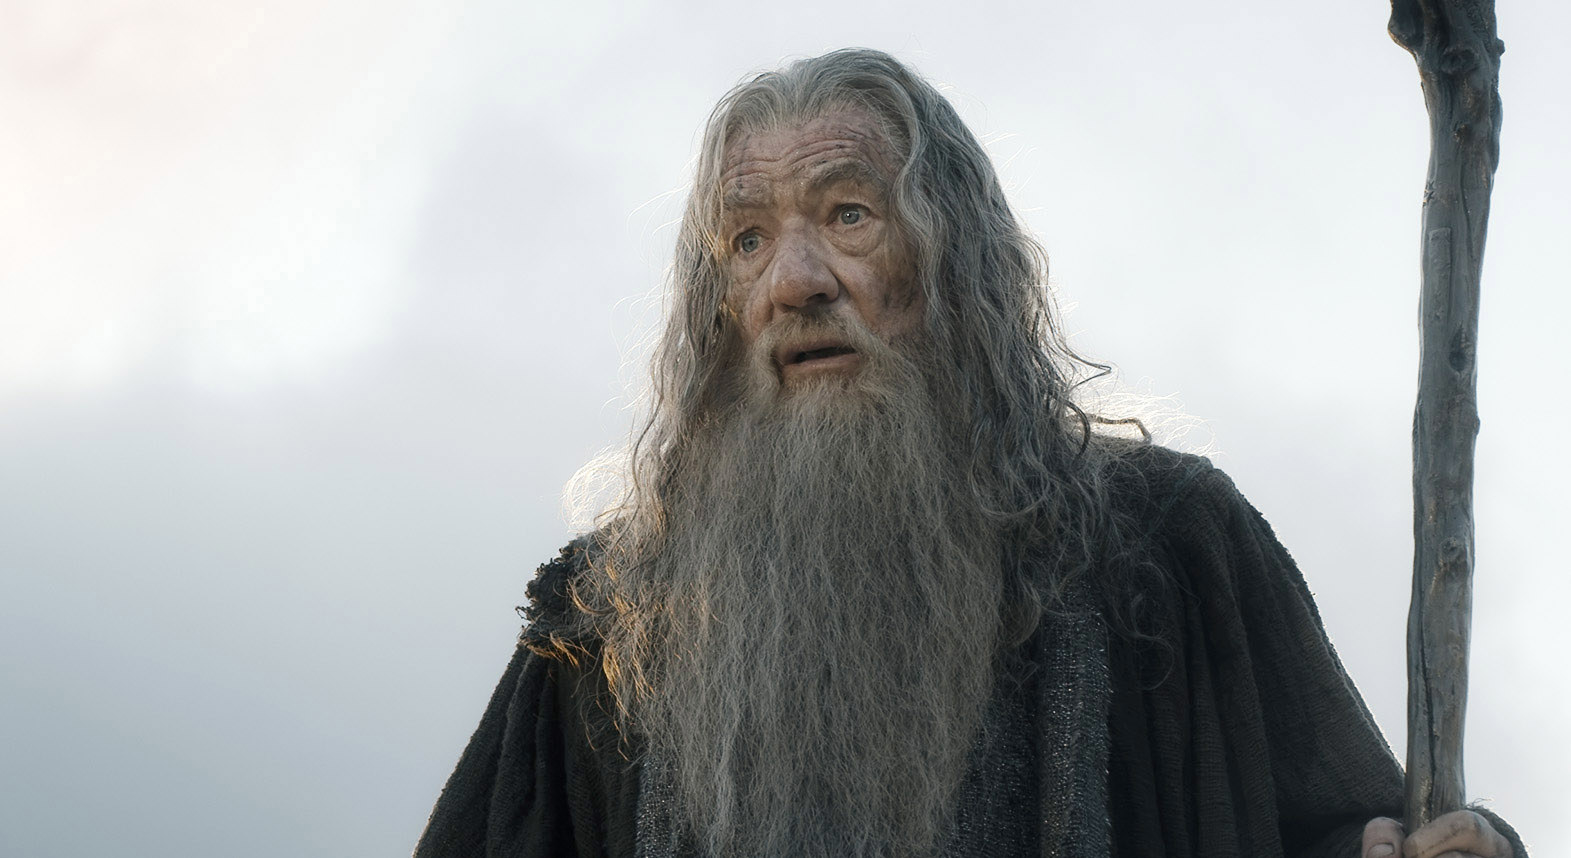 McKellen as Gandalf with a long beard